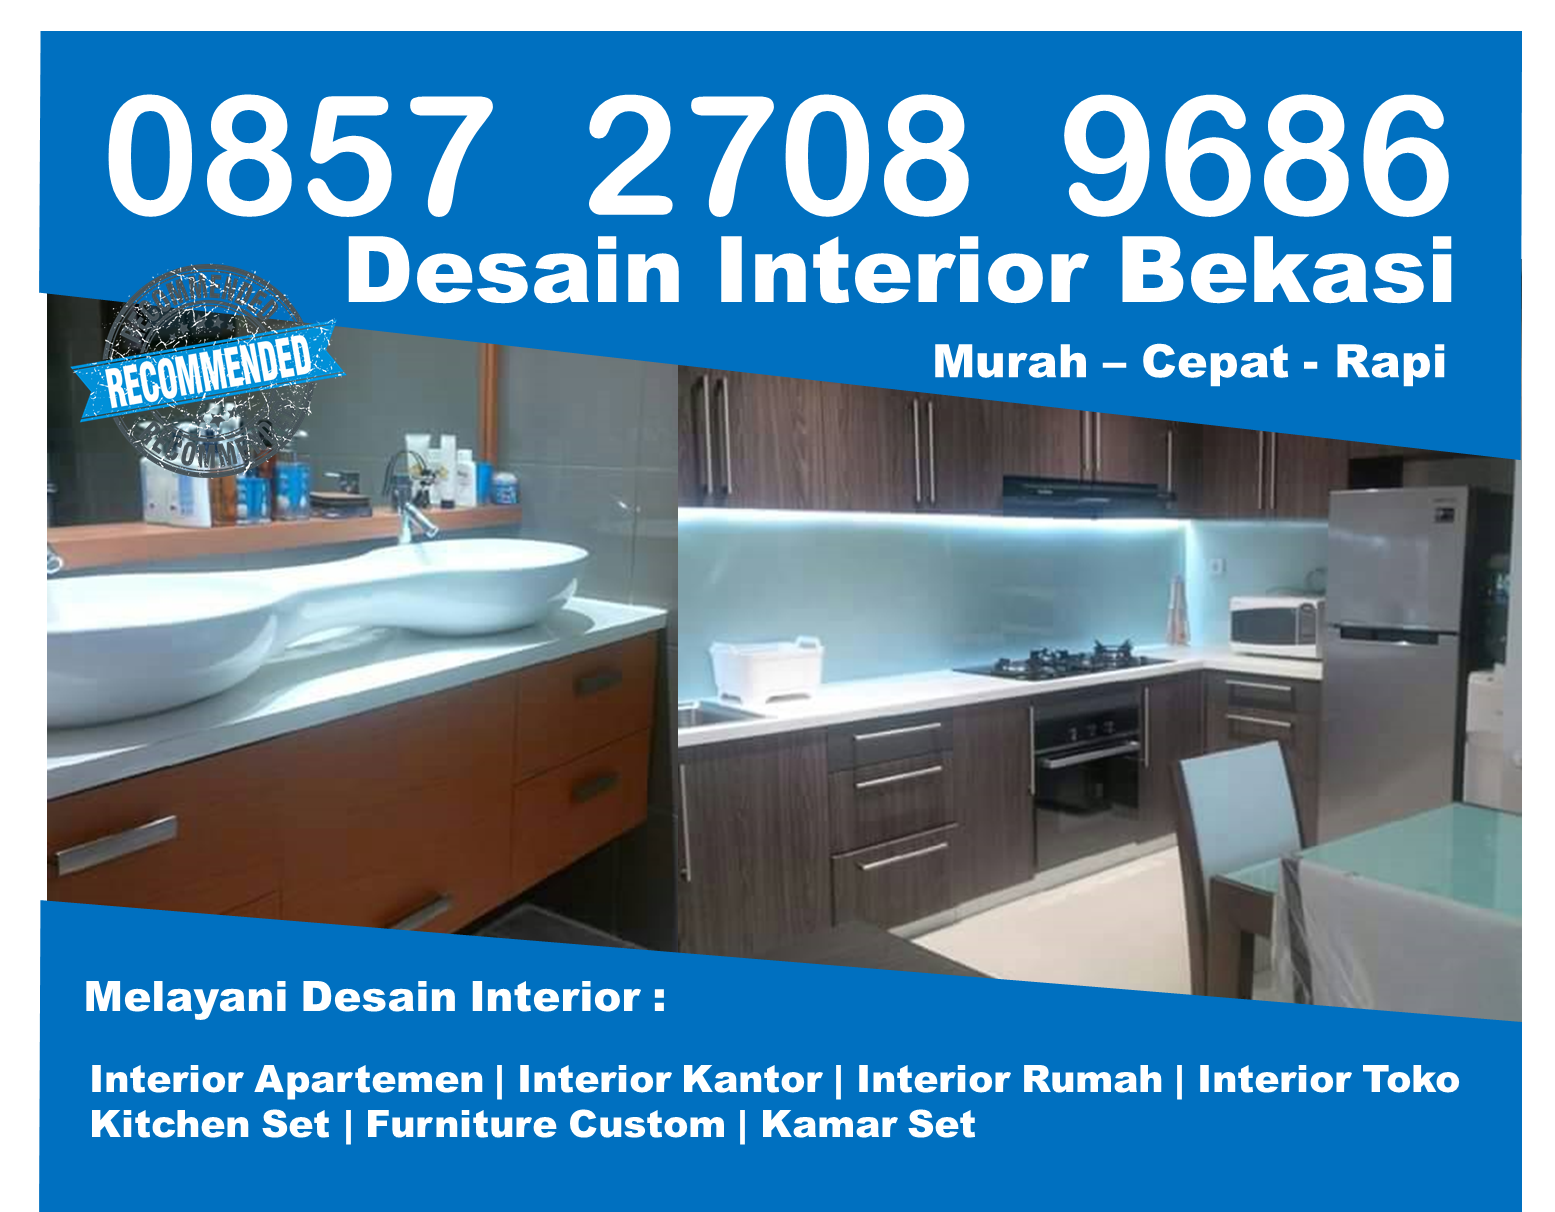 Telp 0857 2708 9686 Indosat Design Interior Apartemen Murah